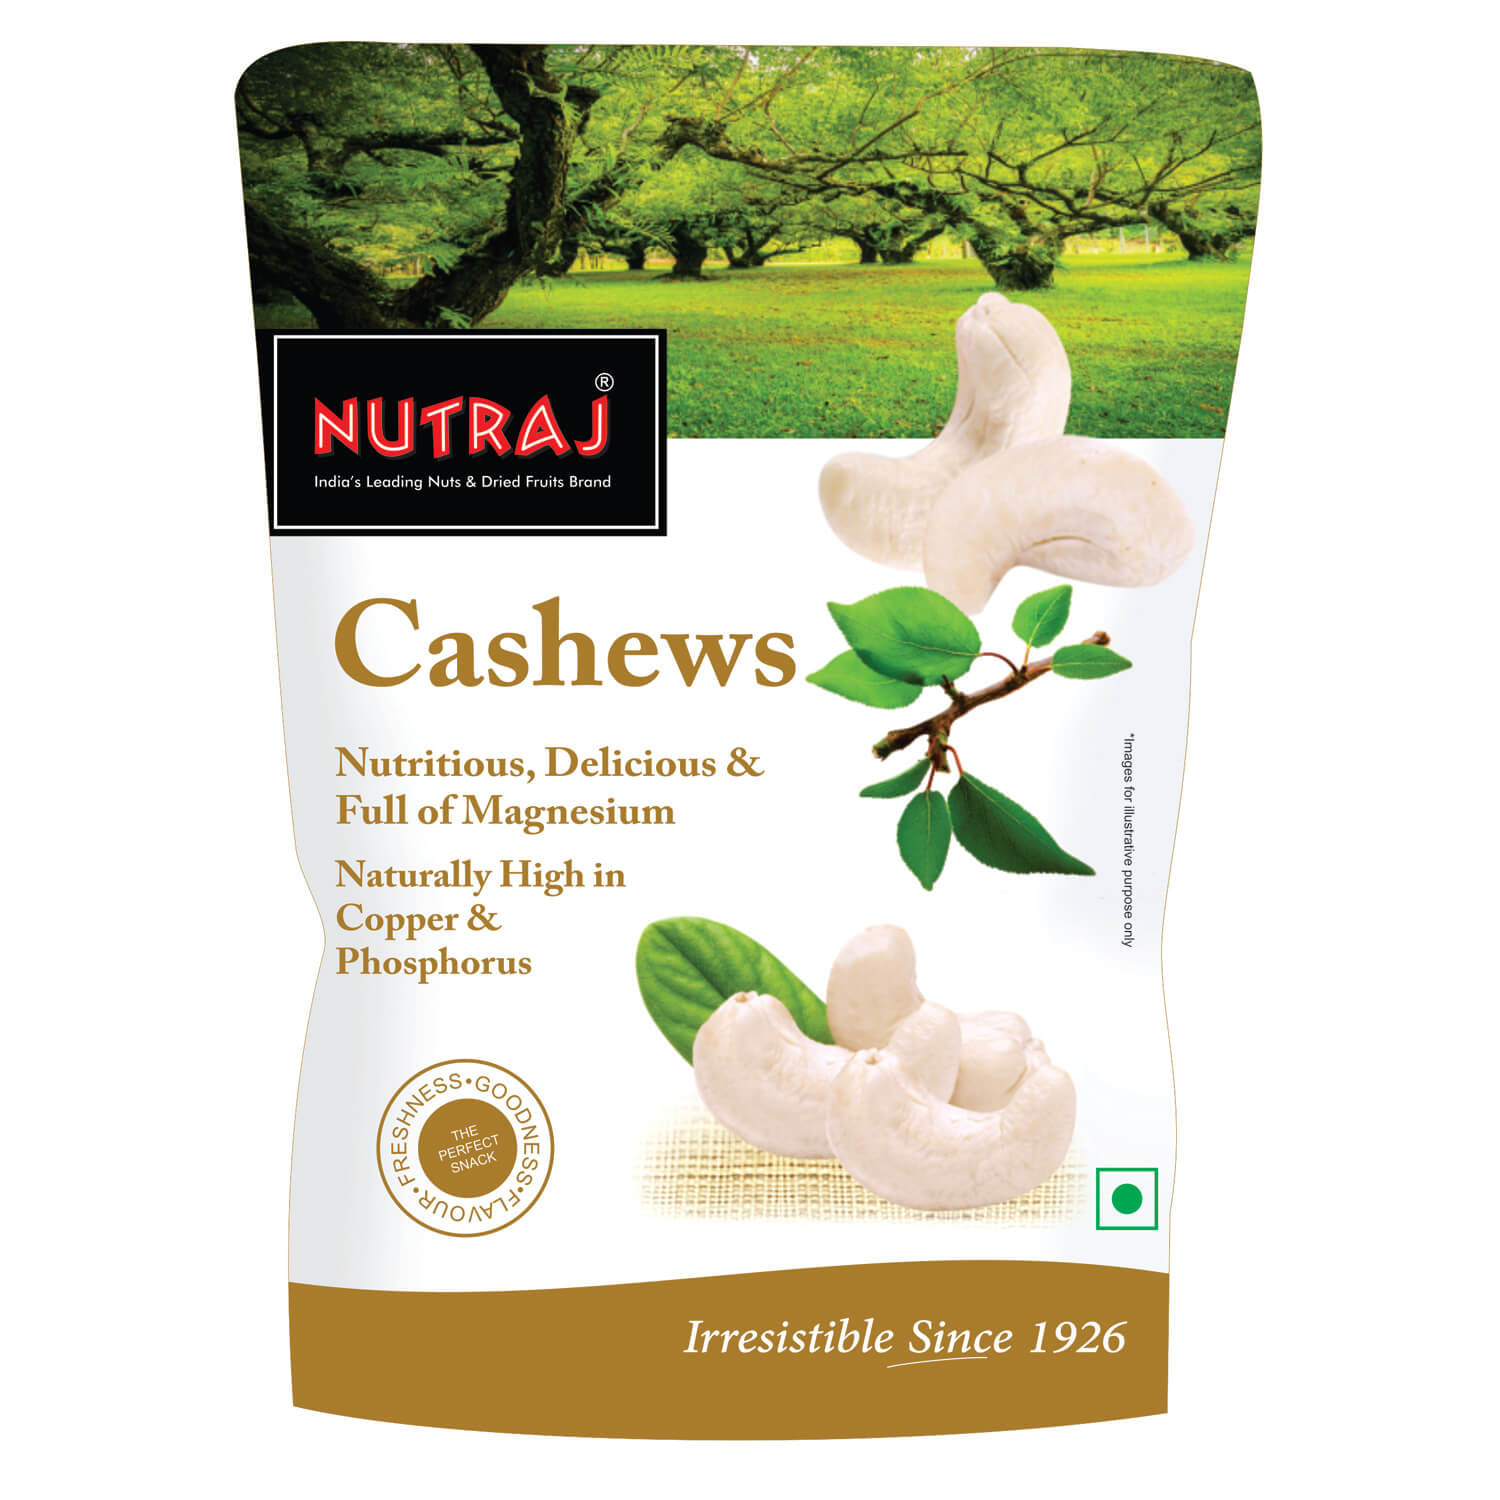 Nutraj Daily Needs Dry Fruits Combo Pack (Almonds, Cashews, Raisins, Pistachios) - 1Kg (250g Each)